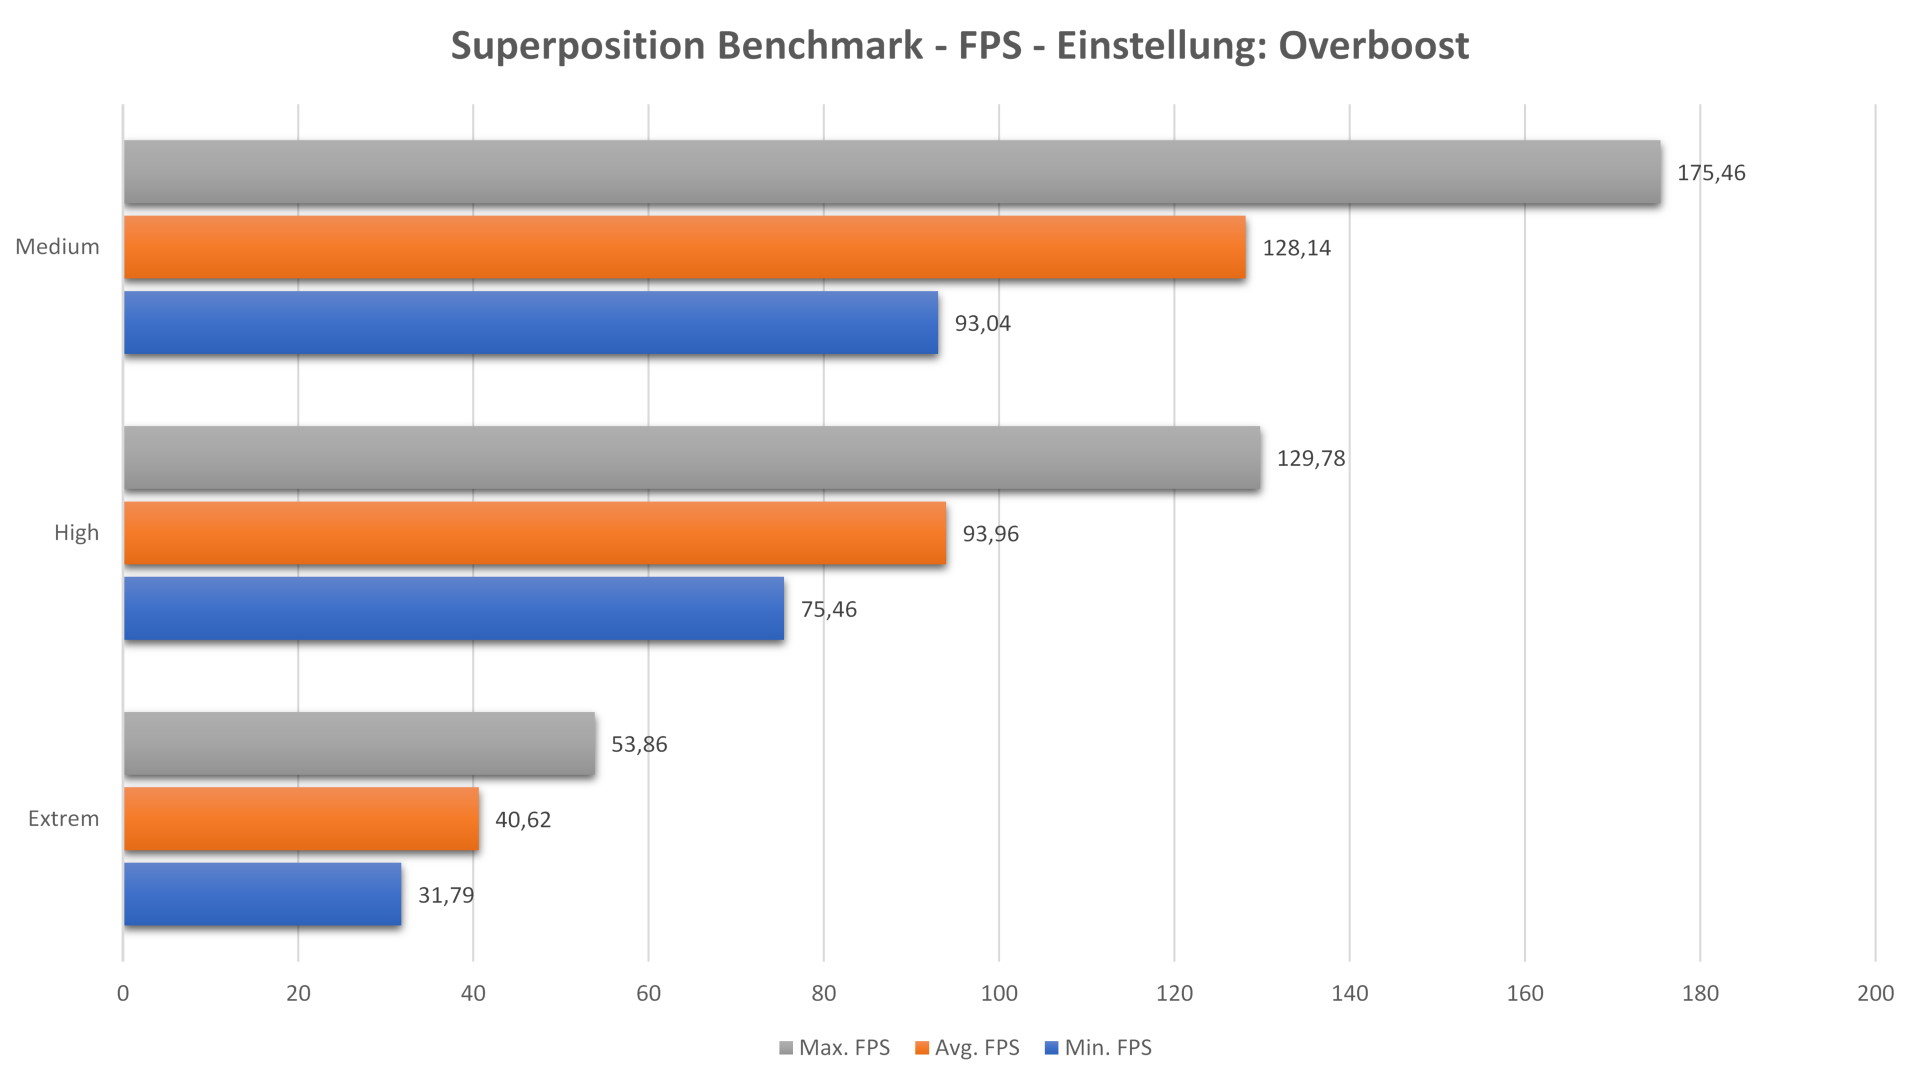 Superposition Benchmark - FPS - Einstellung - Overboost.jpg